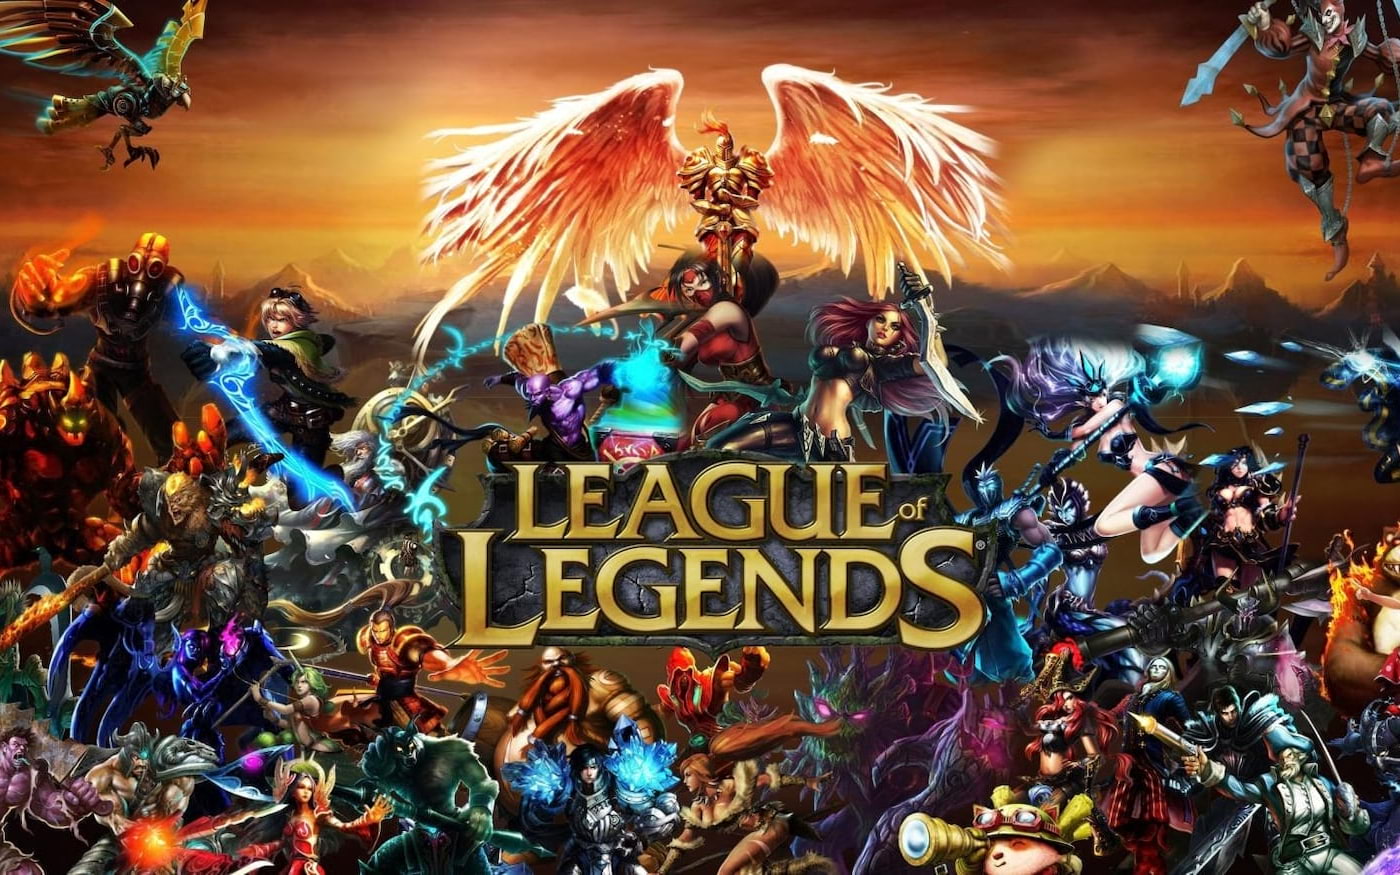 League of Legends pode ganhar versão mobile em 2020